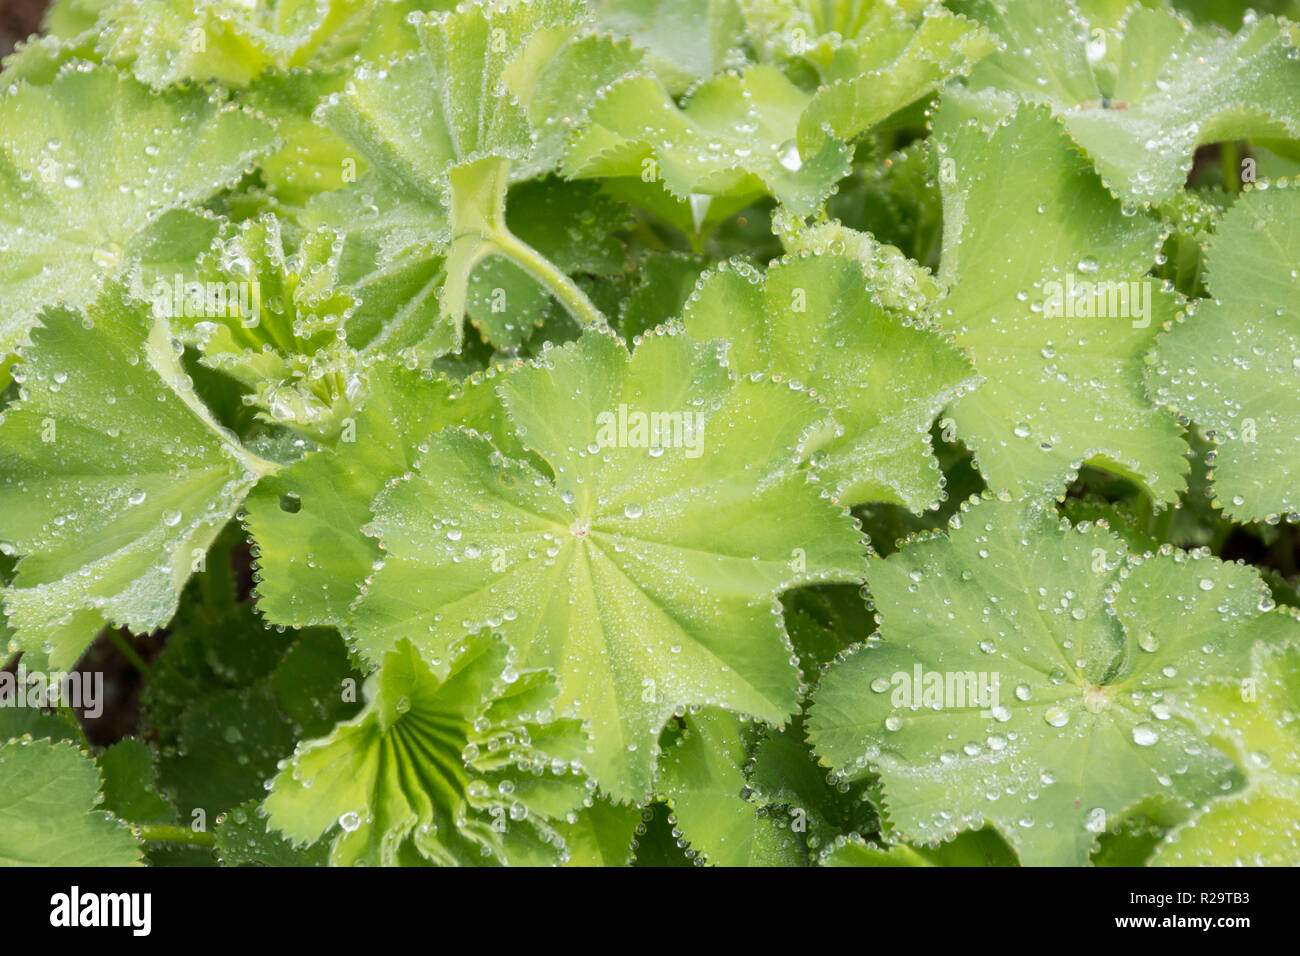 Alchemilla Mollis / Señoras manto planta con gotas de agua en las hojas  Fotografía de stock - Alamy